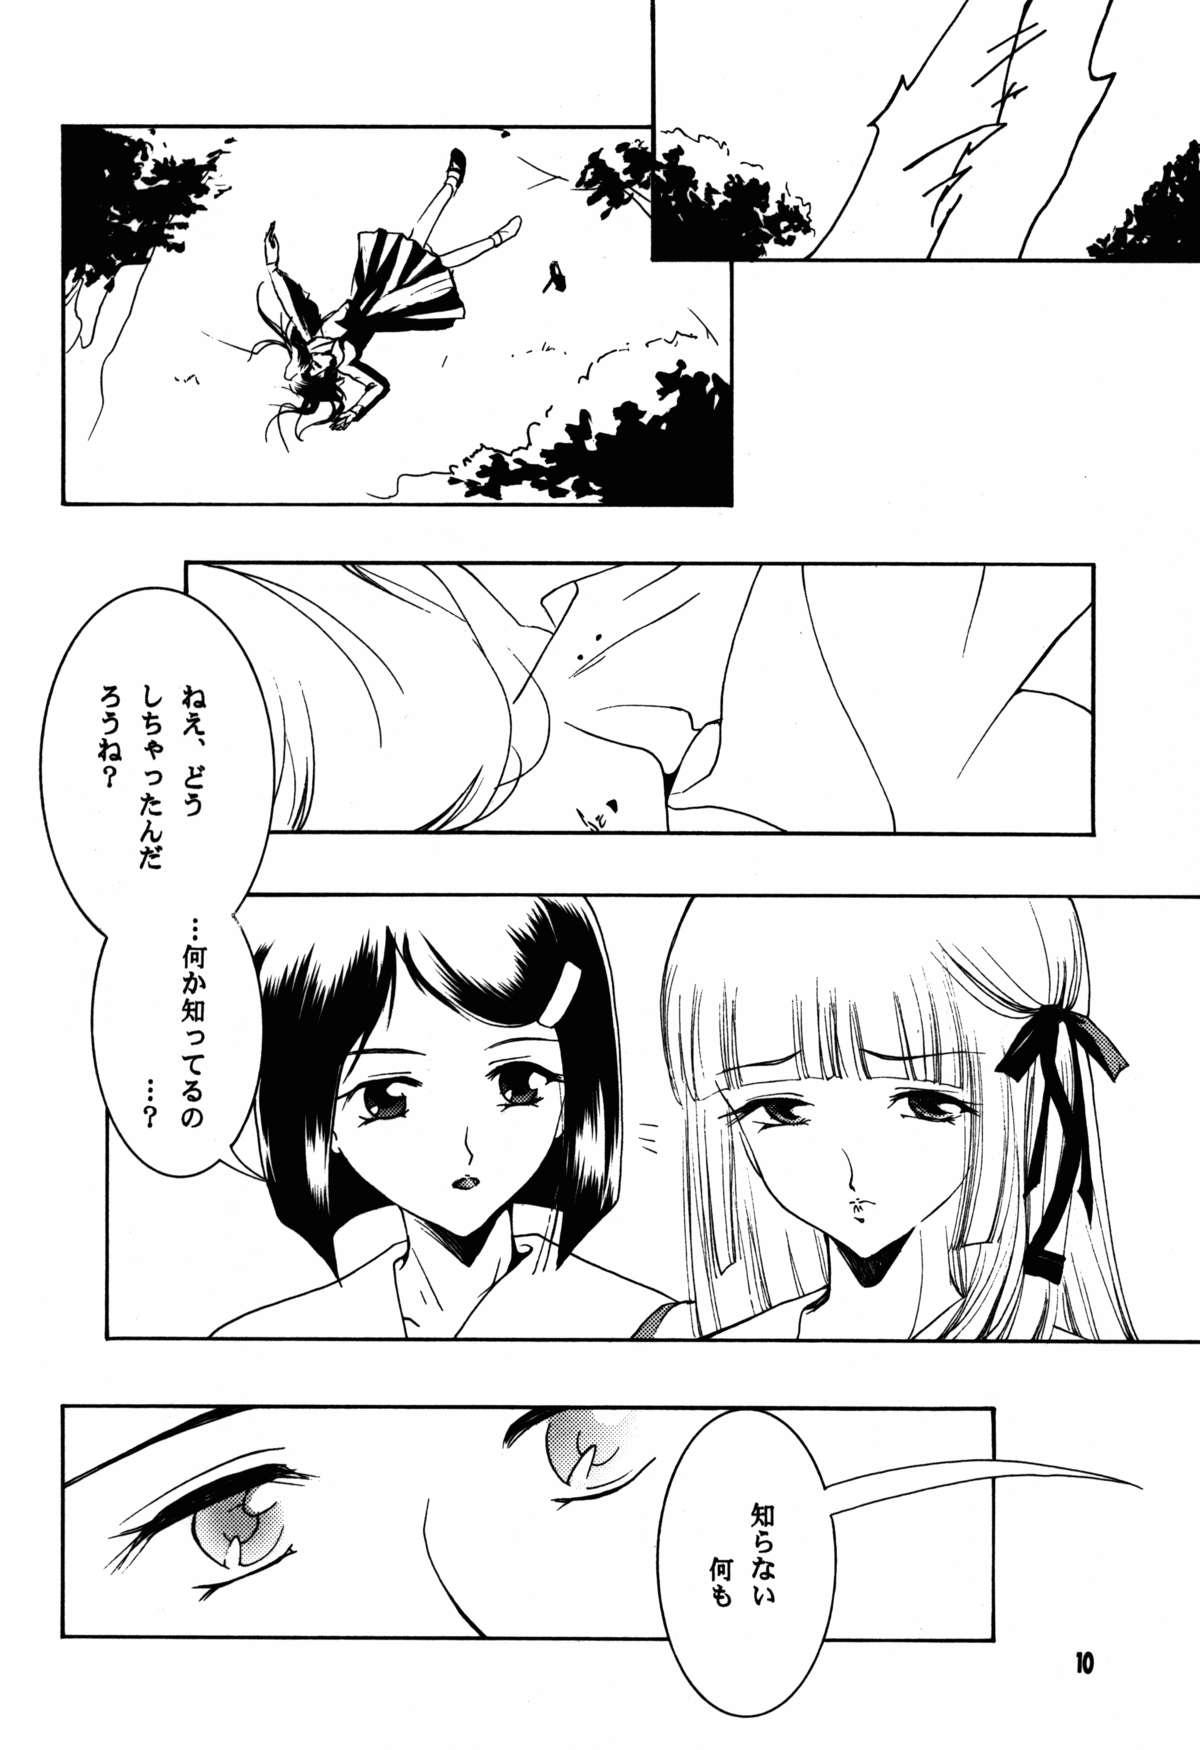 Gozo Hadashi no VAMPIRE 17 - Vampire princess miyu Best Blow Job - Page 10